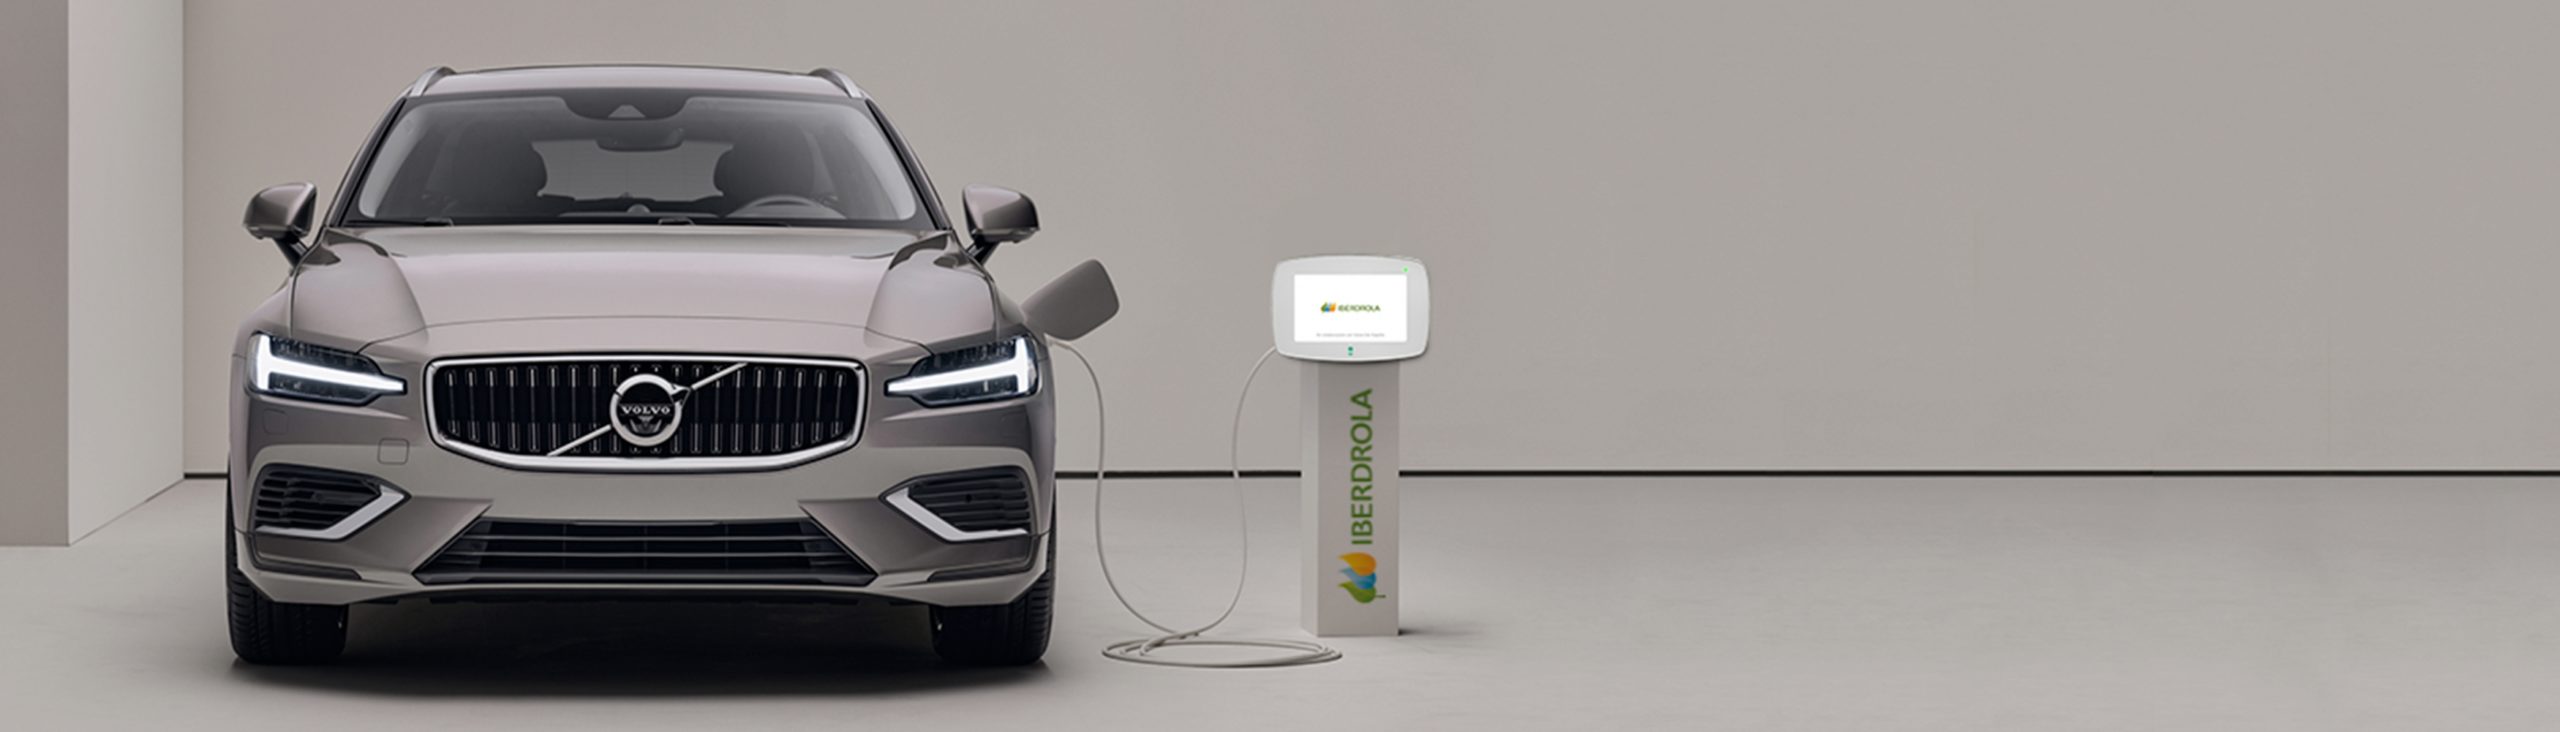 Volvo Car España e Iberdrola por el impulso de la electromovilidad